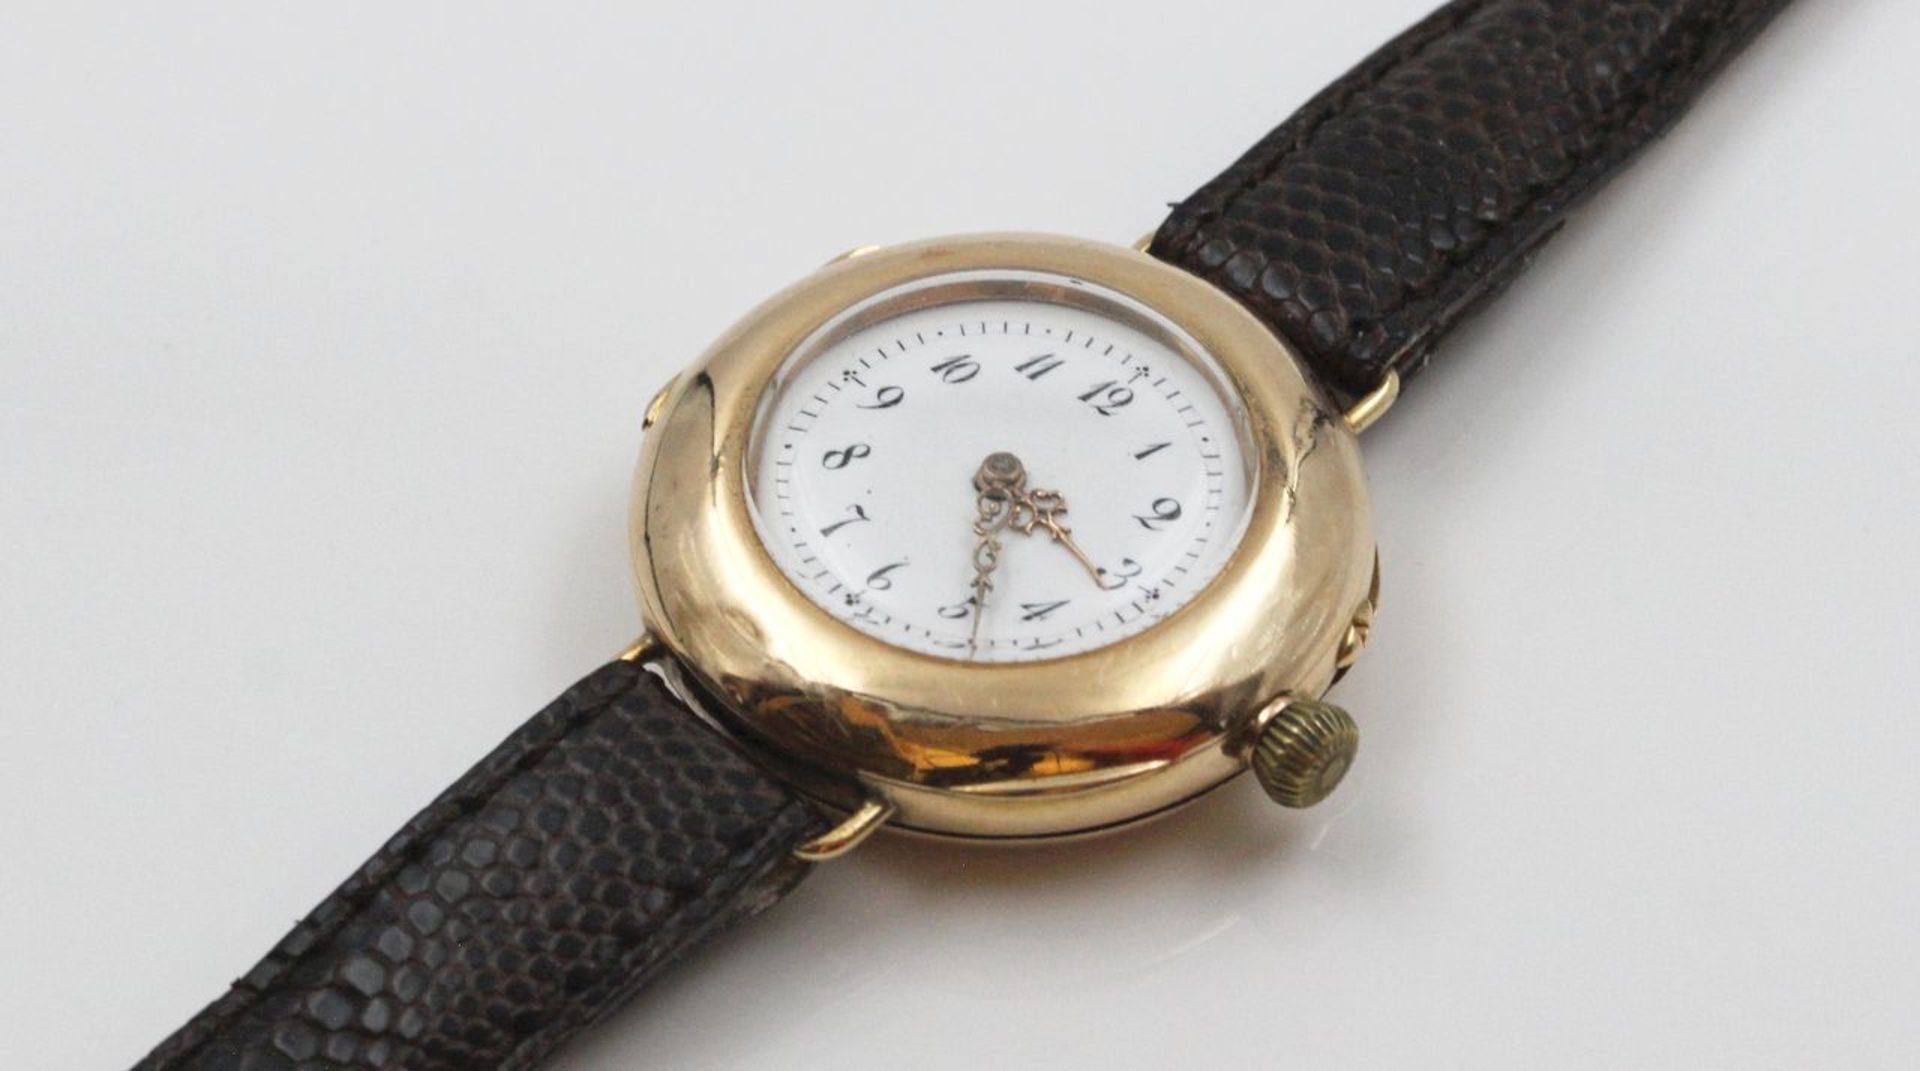 Frühe Armbanduhr "Vacheron & Constantin". Glattes, rundes 585/000 GG-Gehäuse, Innendeckel aus